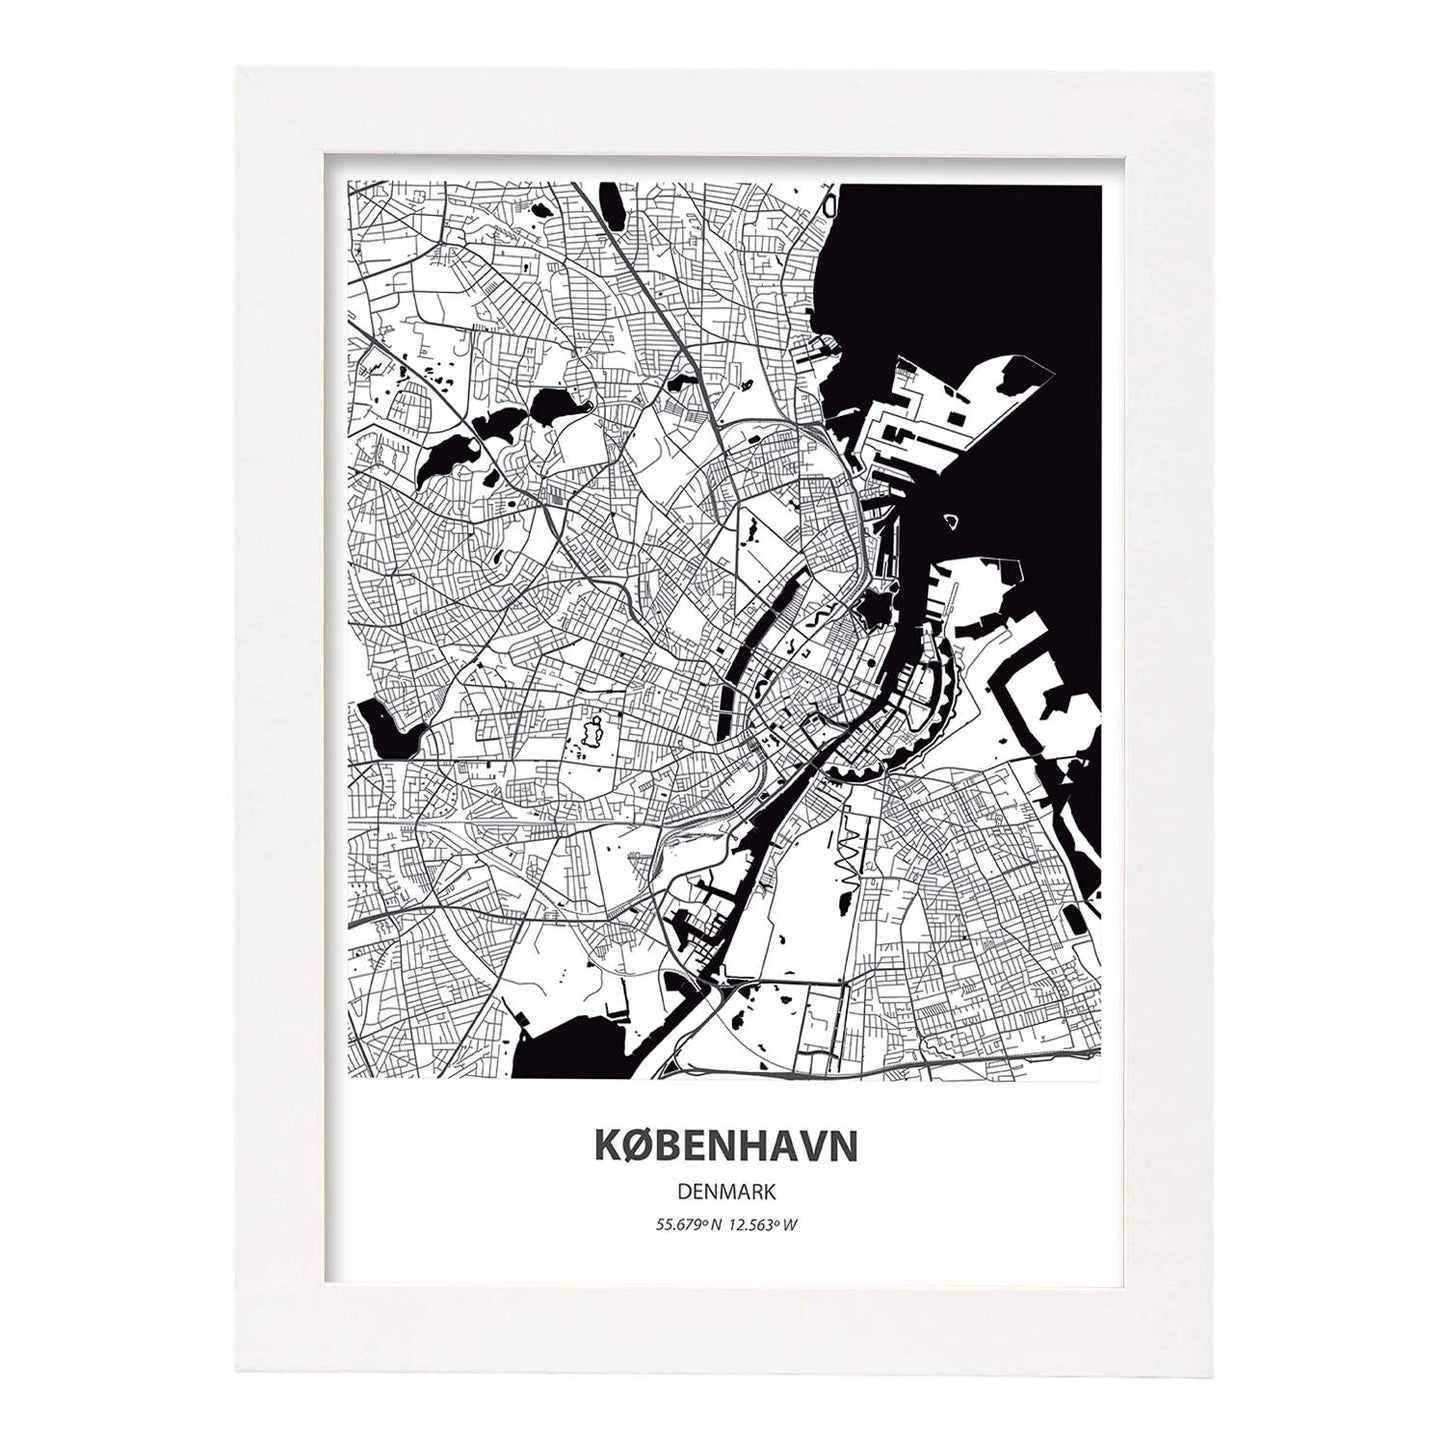 Poster con mapa de Kobenhavn - Dinamarca. Láminas de ciudades de Europa con mares y ríos en color negro.-Artwork-Nacnic-A4-Marco Blanco-Nacnic Estudio SL